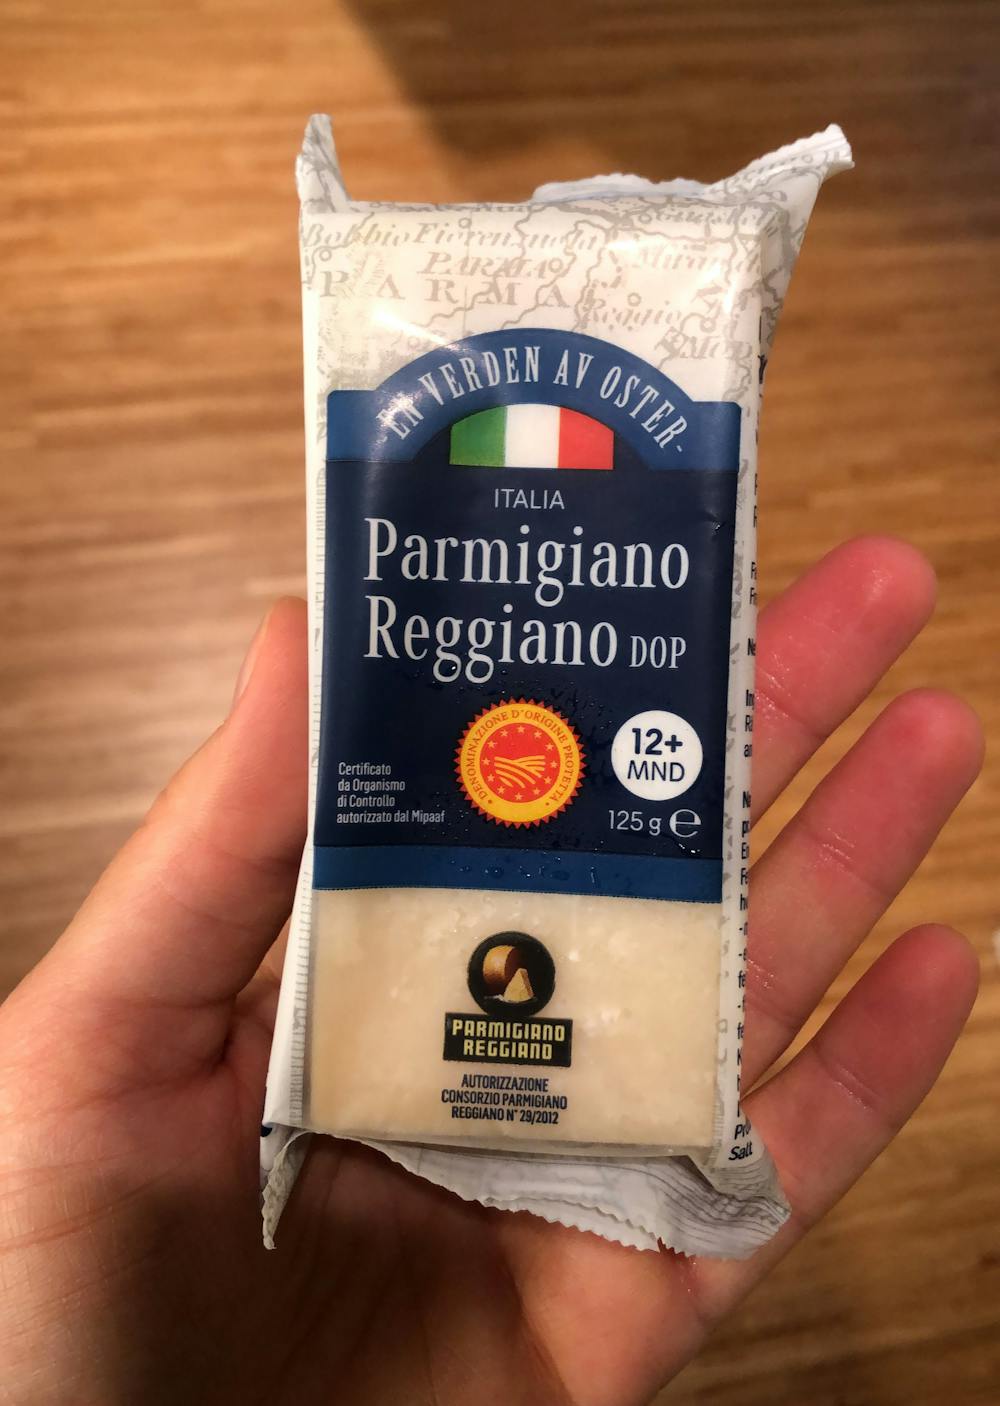 Parmigiano reggiano dop, En verden av oster